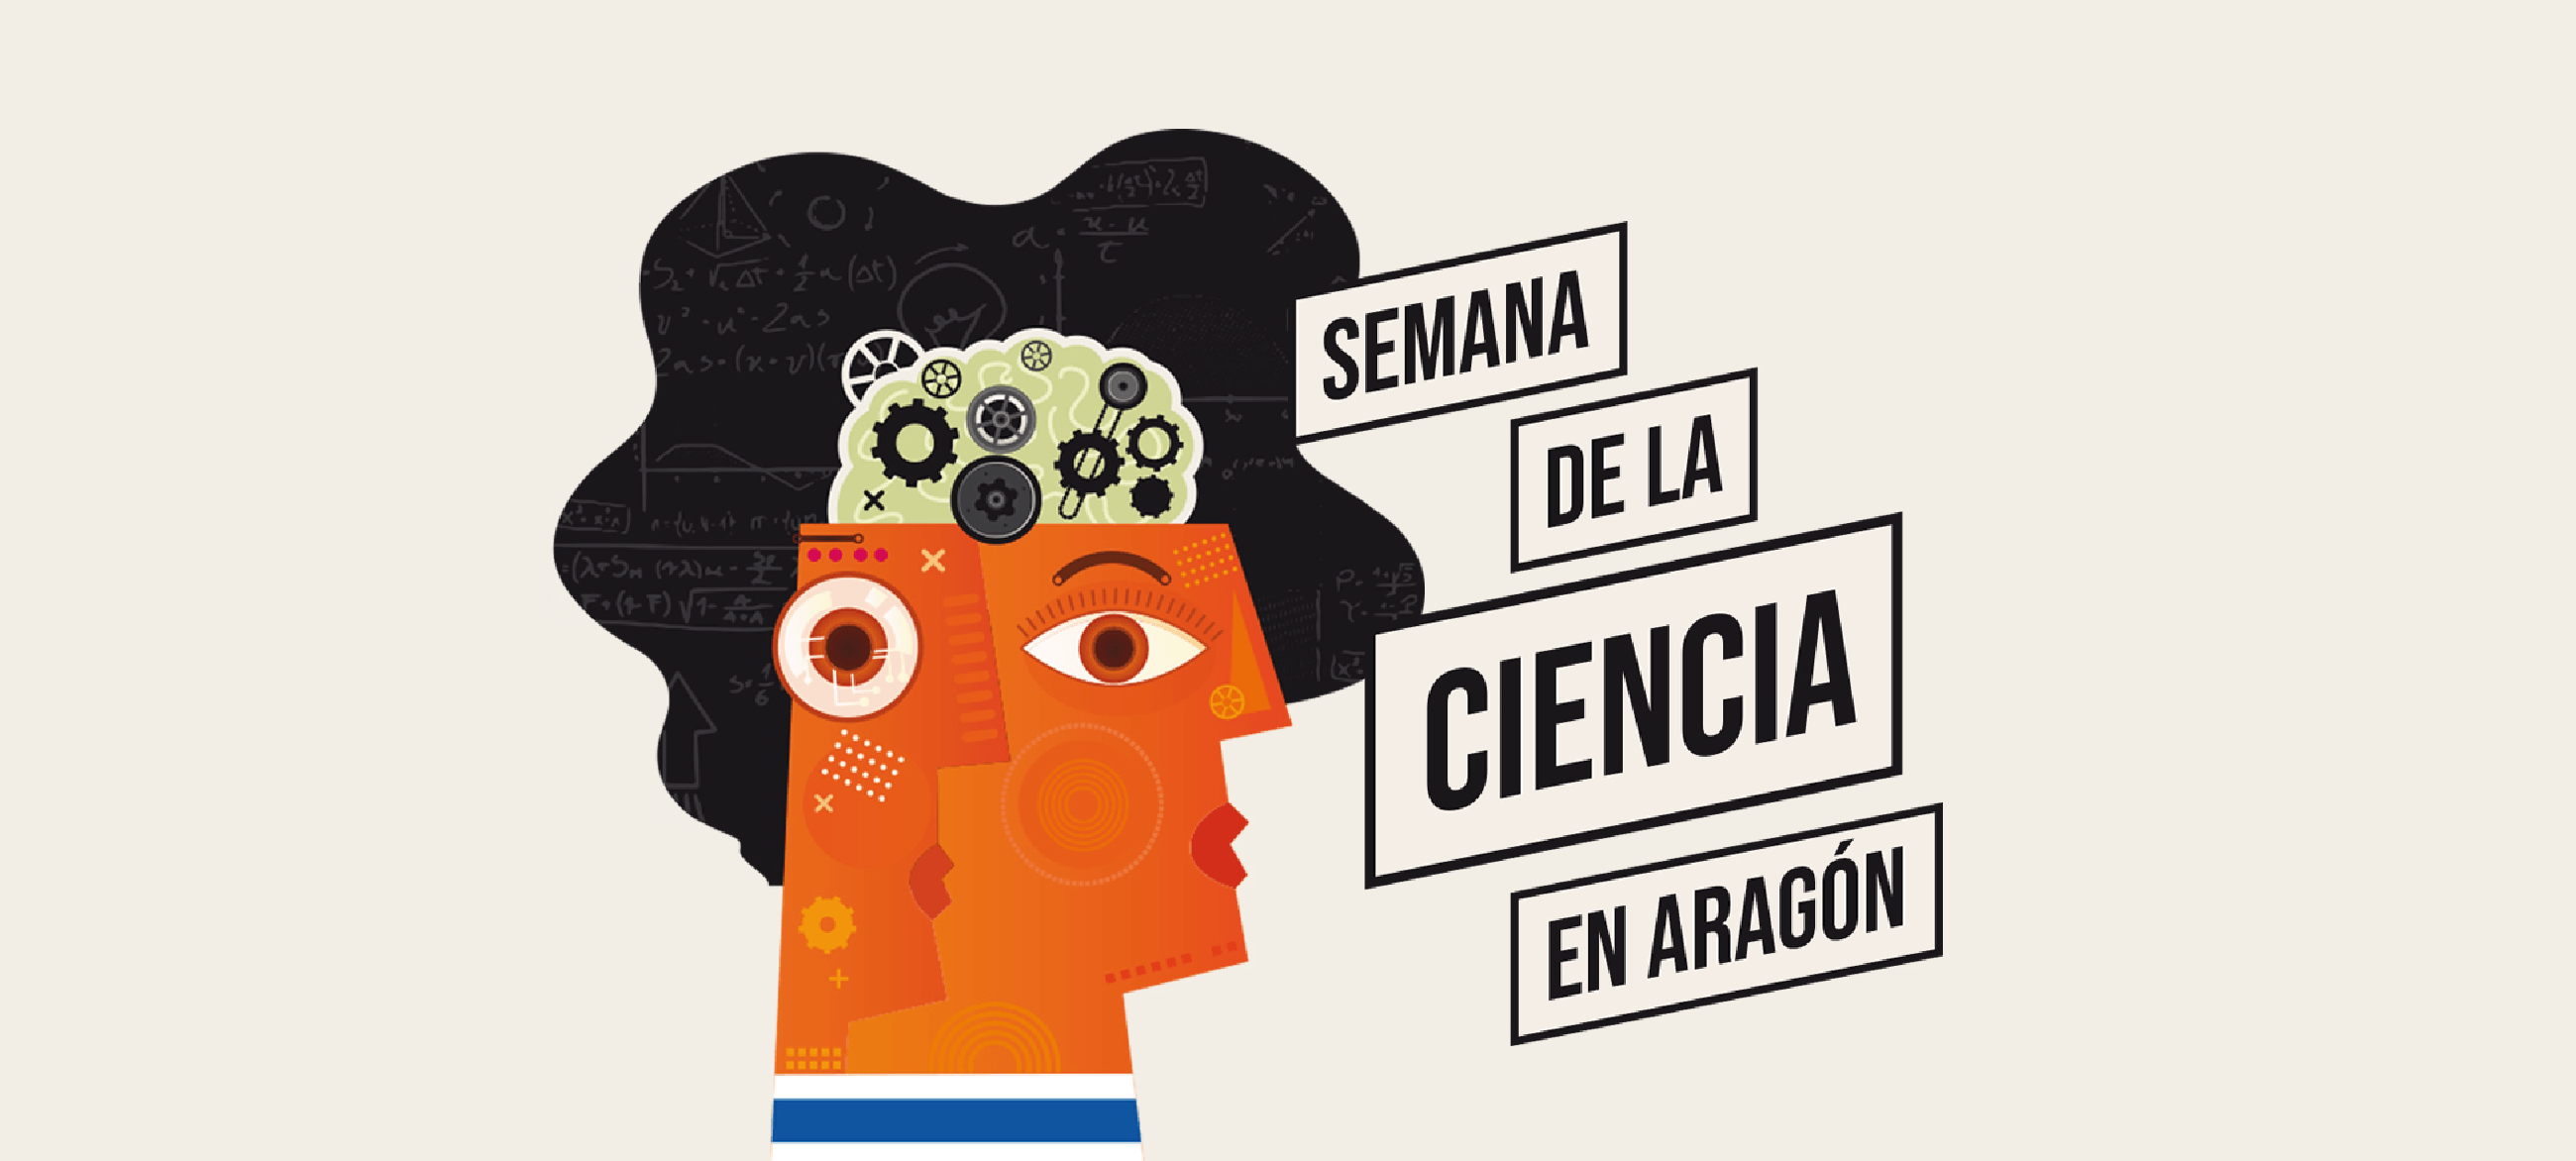 ITAINNOVA participa en la Semana de Ciencia de Aragón